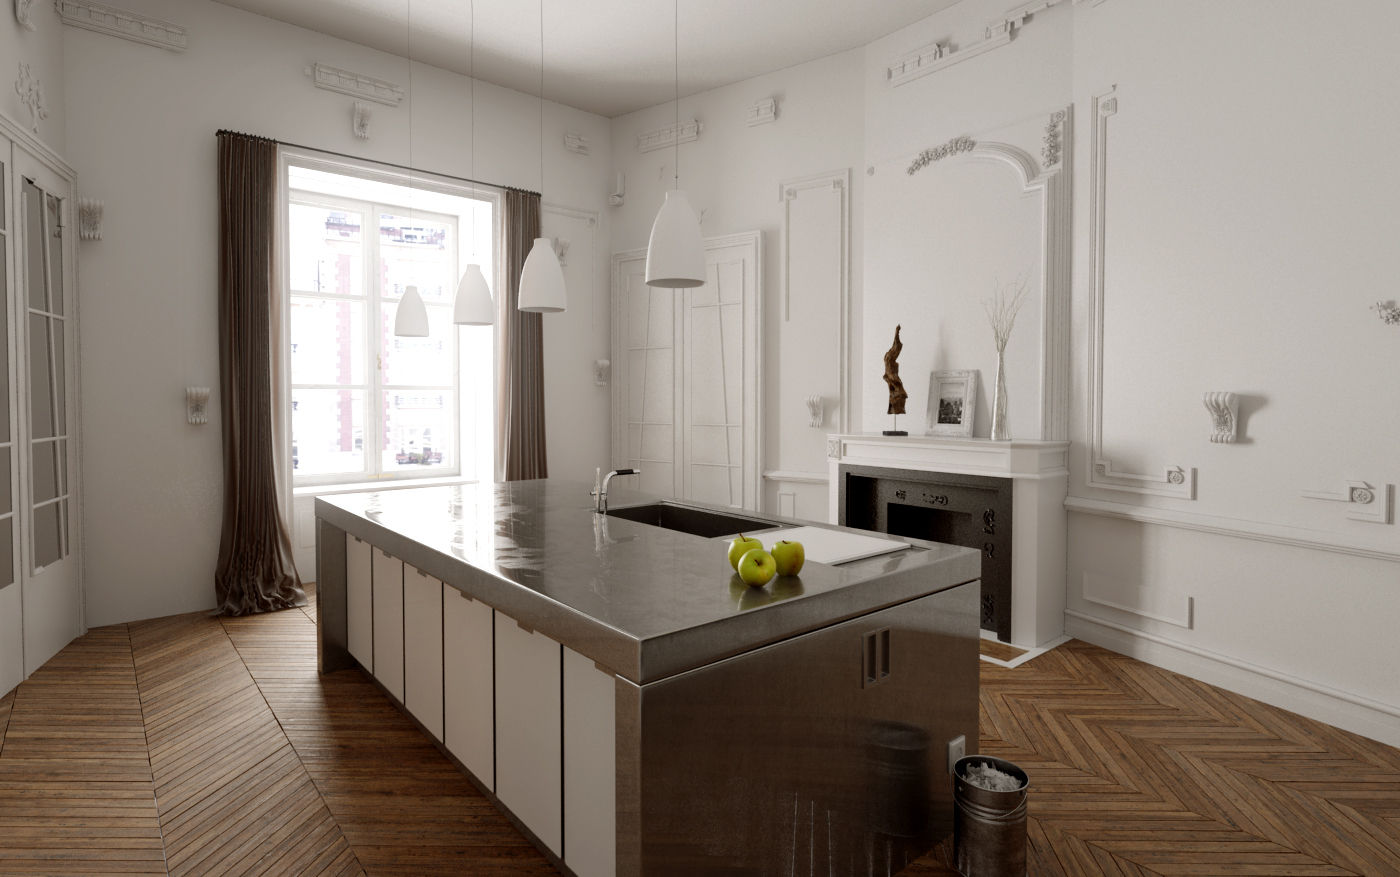 110 m² découpe Haussmann, Better and better Better and better Cocinas modernas